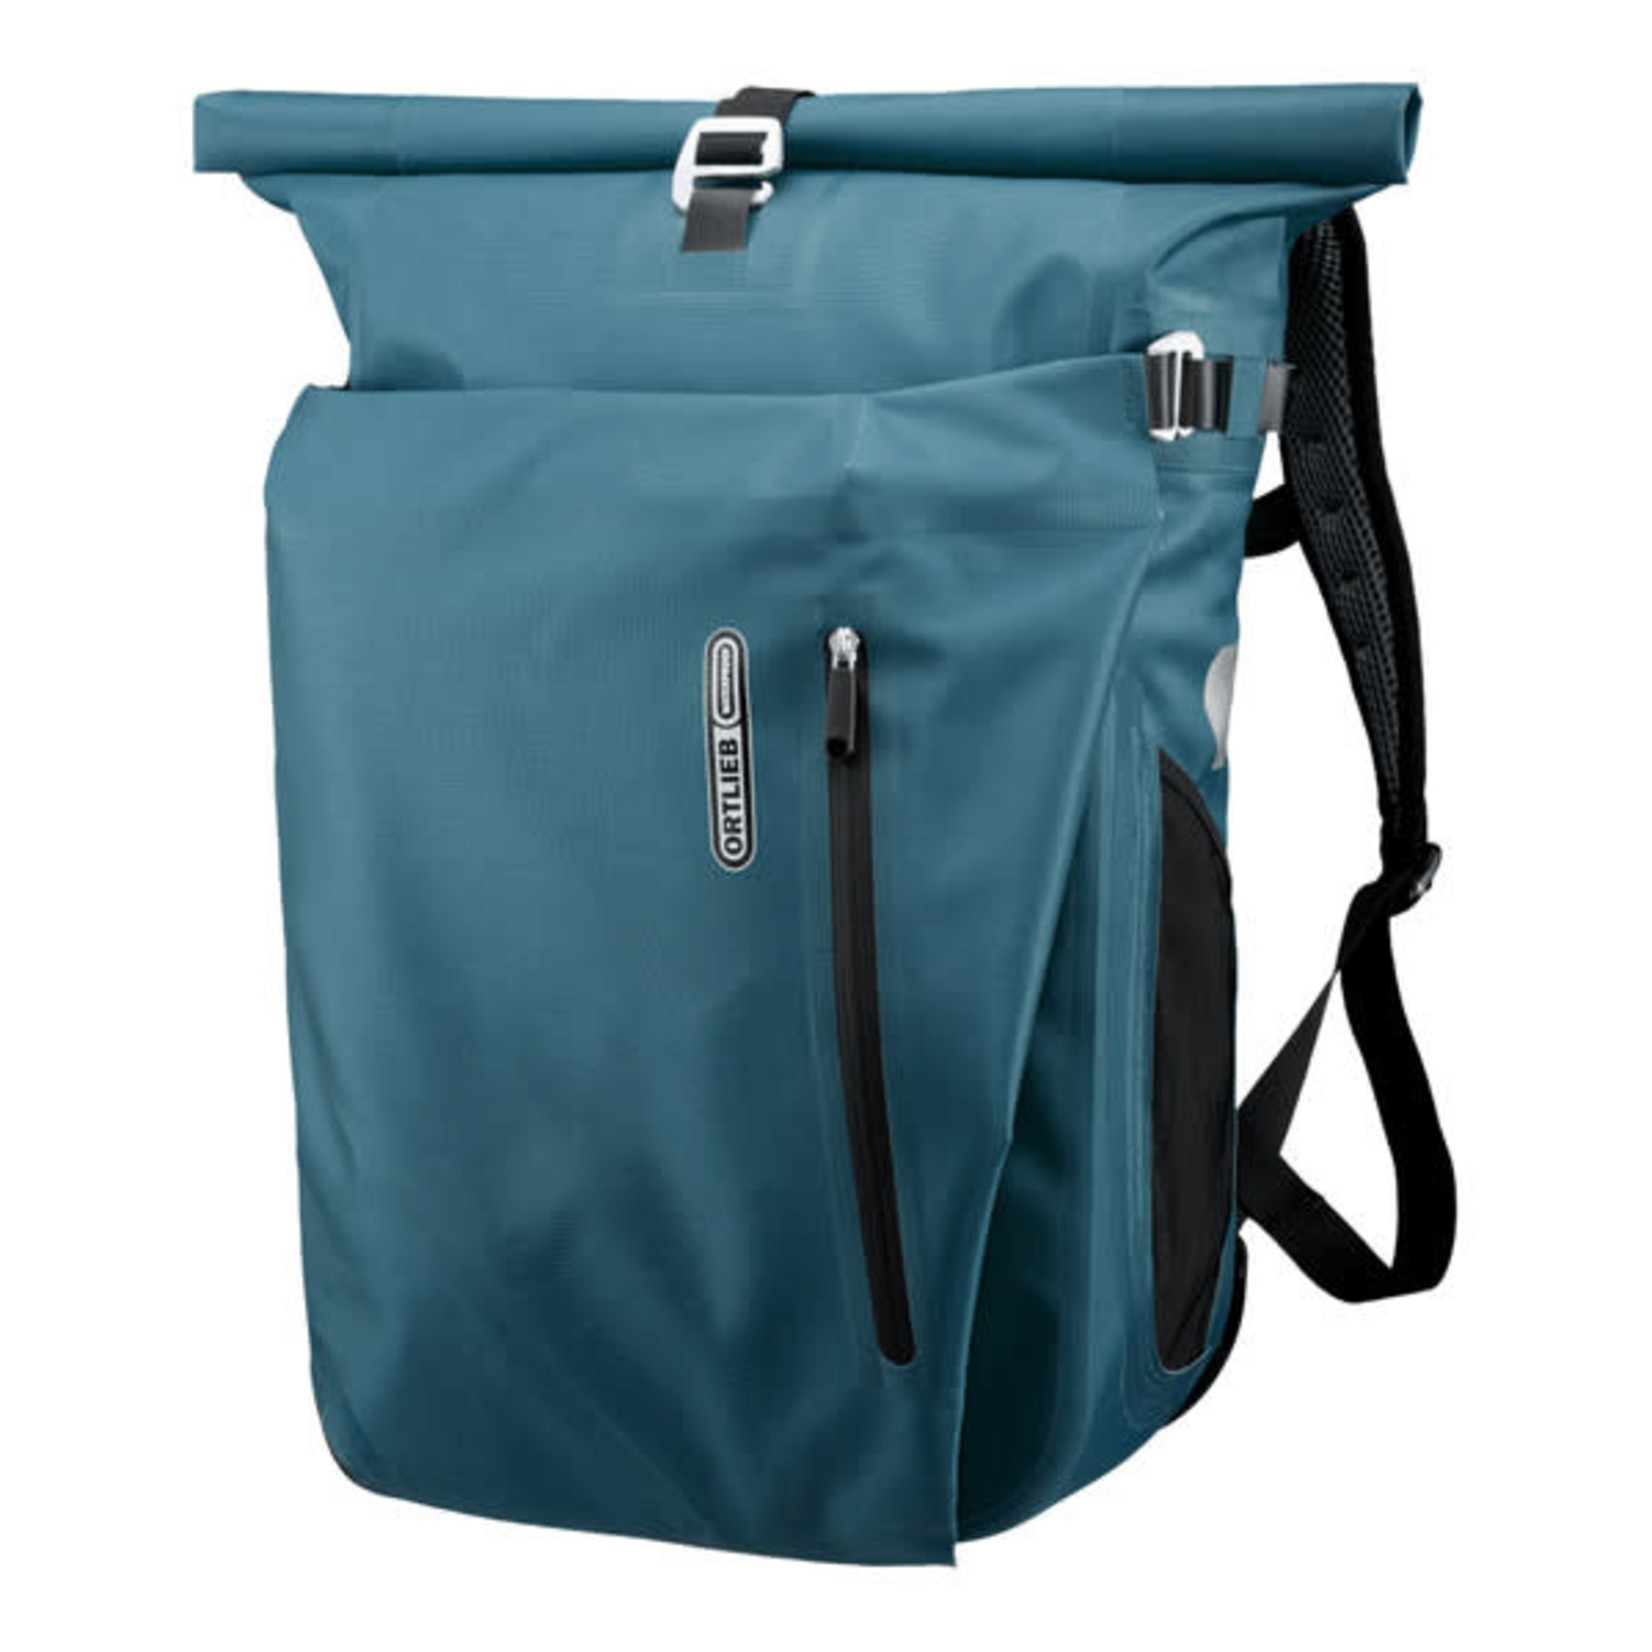 Ortlieb Ortlieb Vario PS Backpack - Pannier Bag F7713 - 26L Petrol